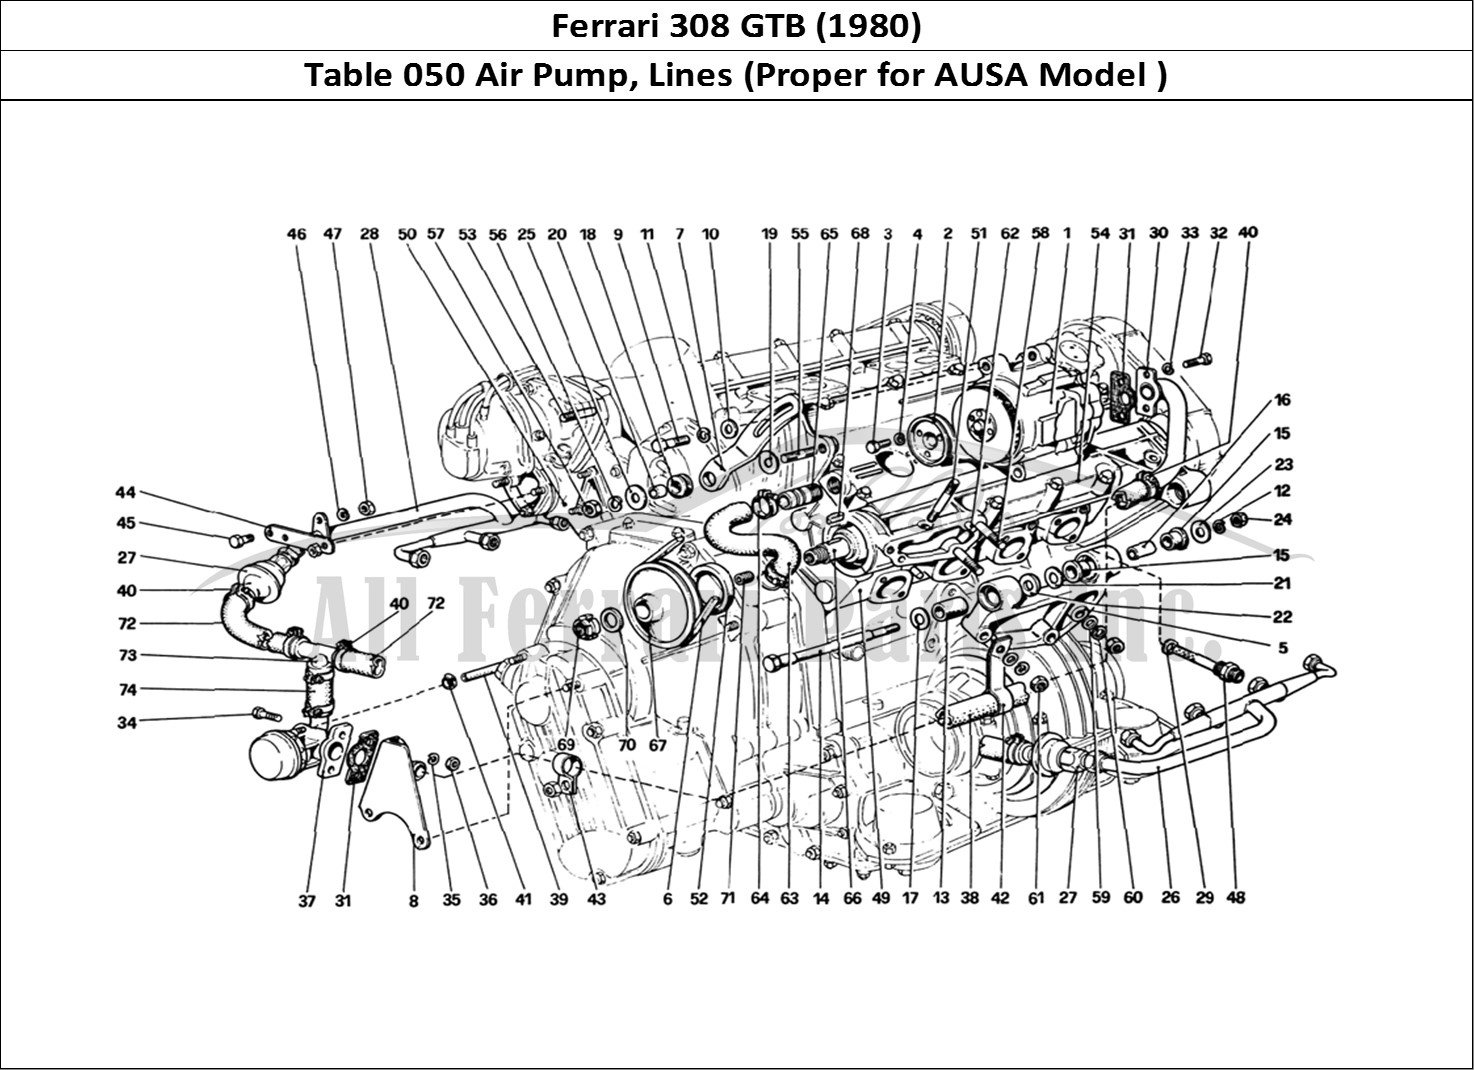 Ferrari Parts Ferrari 308 GTB (1980) Page 050 Air Pump and Pipings (Var